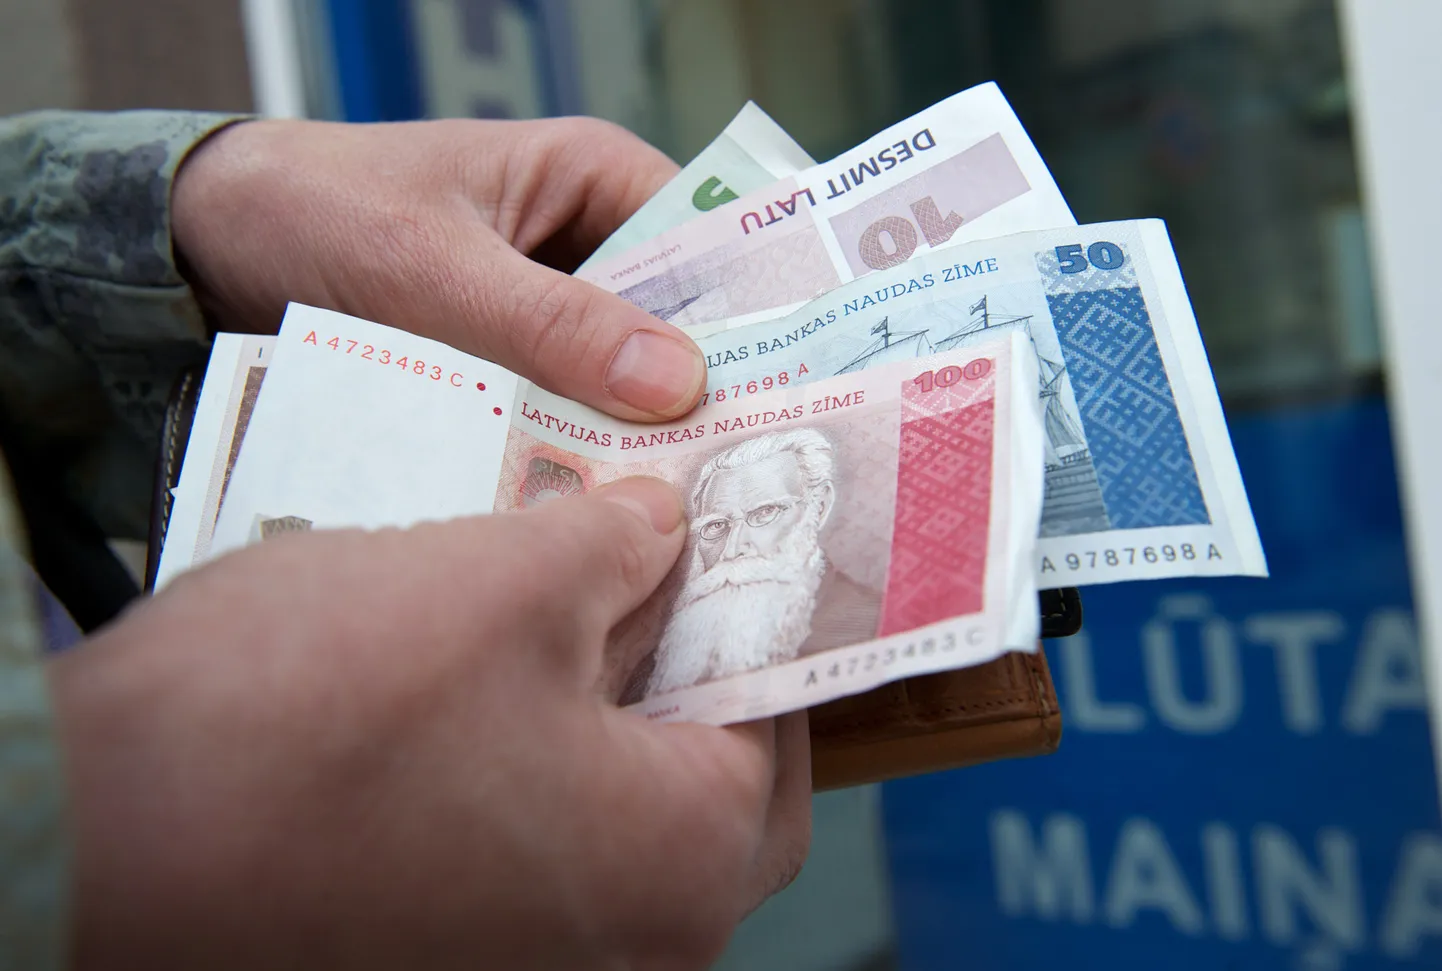 Naine täna Lätis valuutavahetuspunktis latti lugemas. Euroopa Komisjon andis täna Lätile rohelise tule tulevast aastast eurotsooniga liitumiseks.